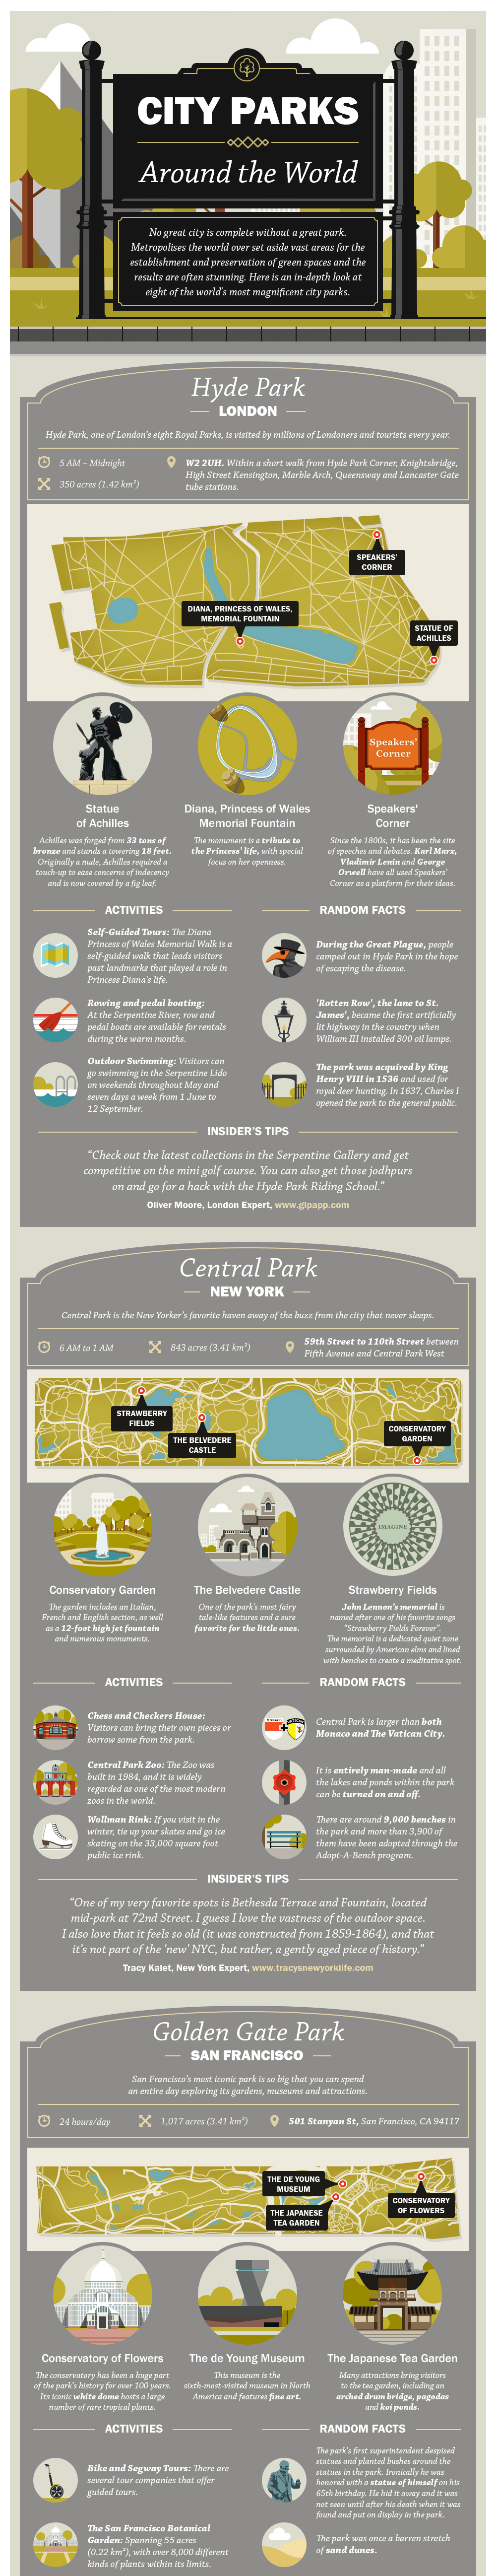 Best city parks